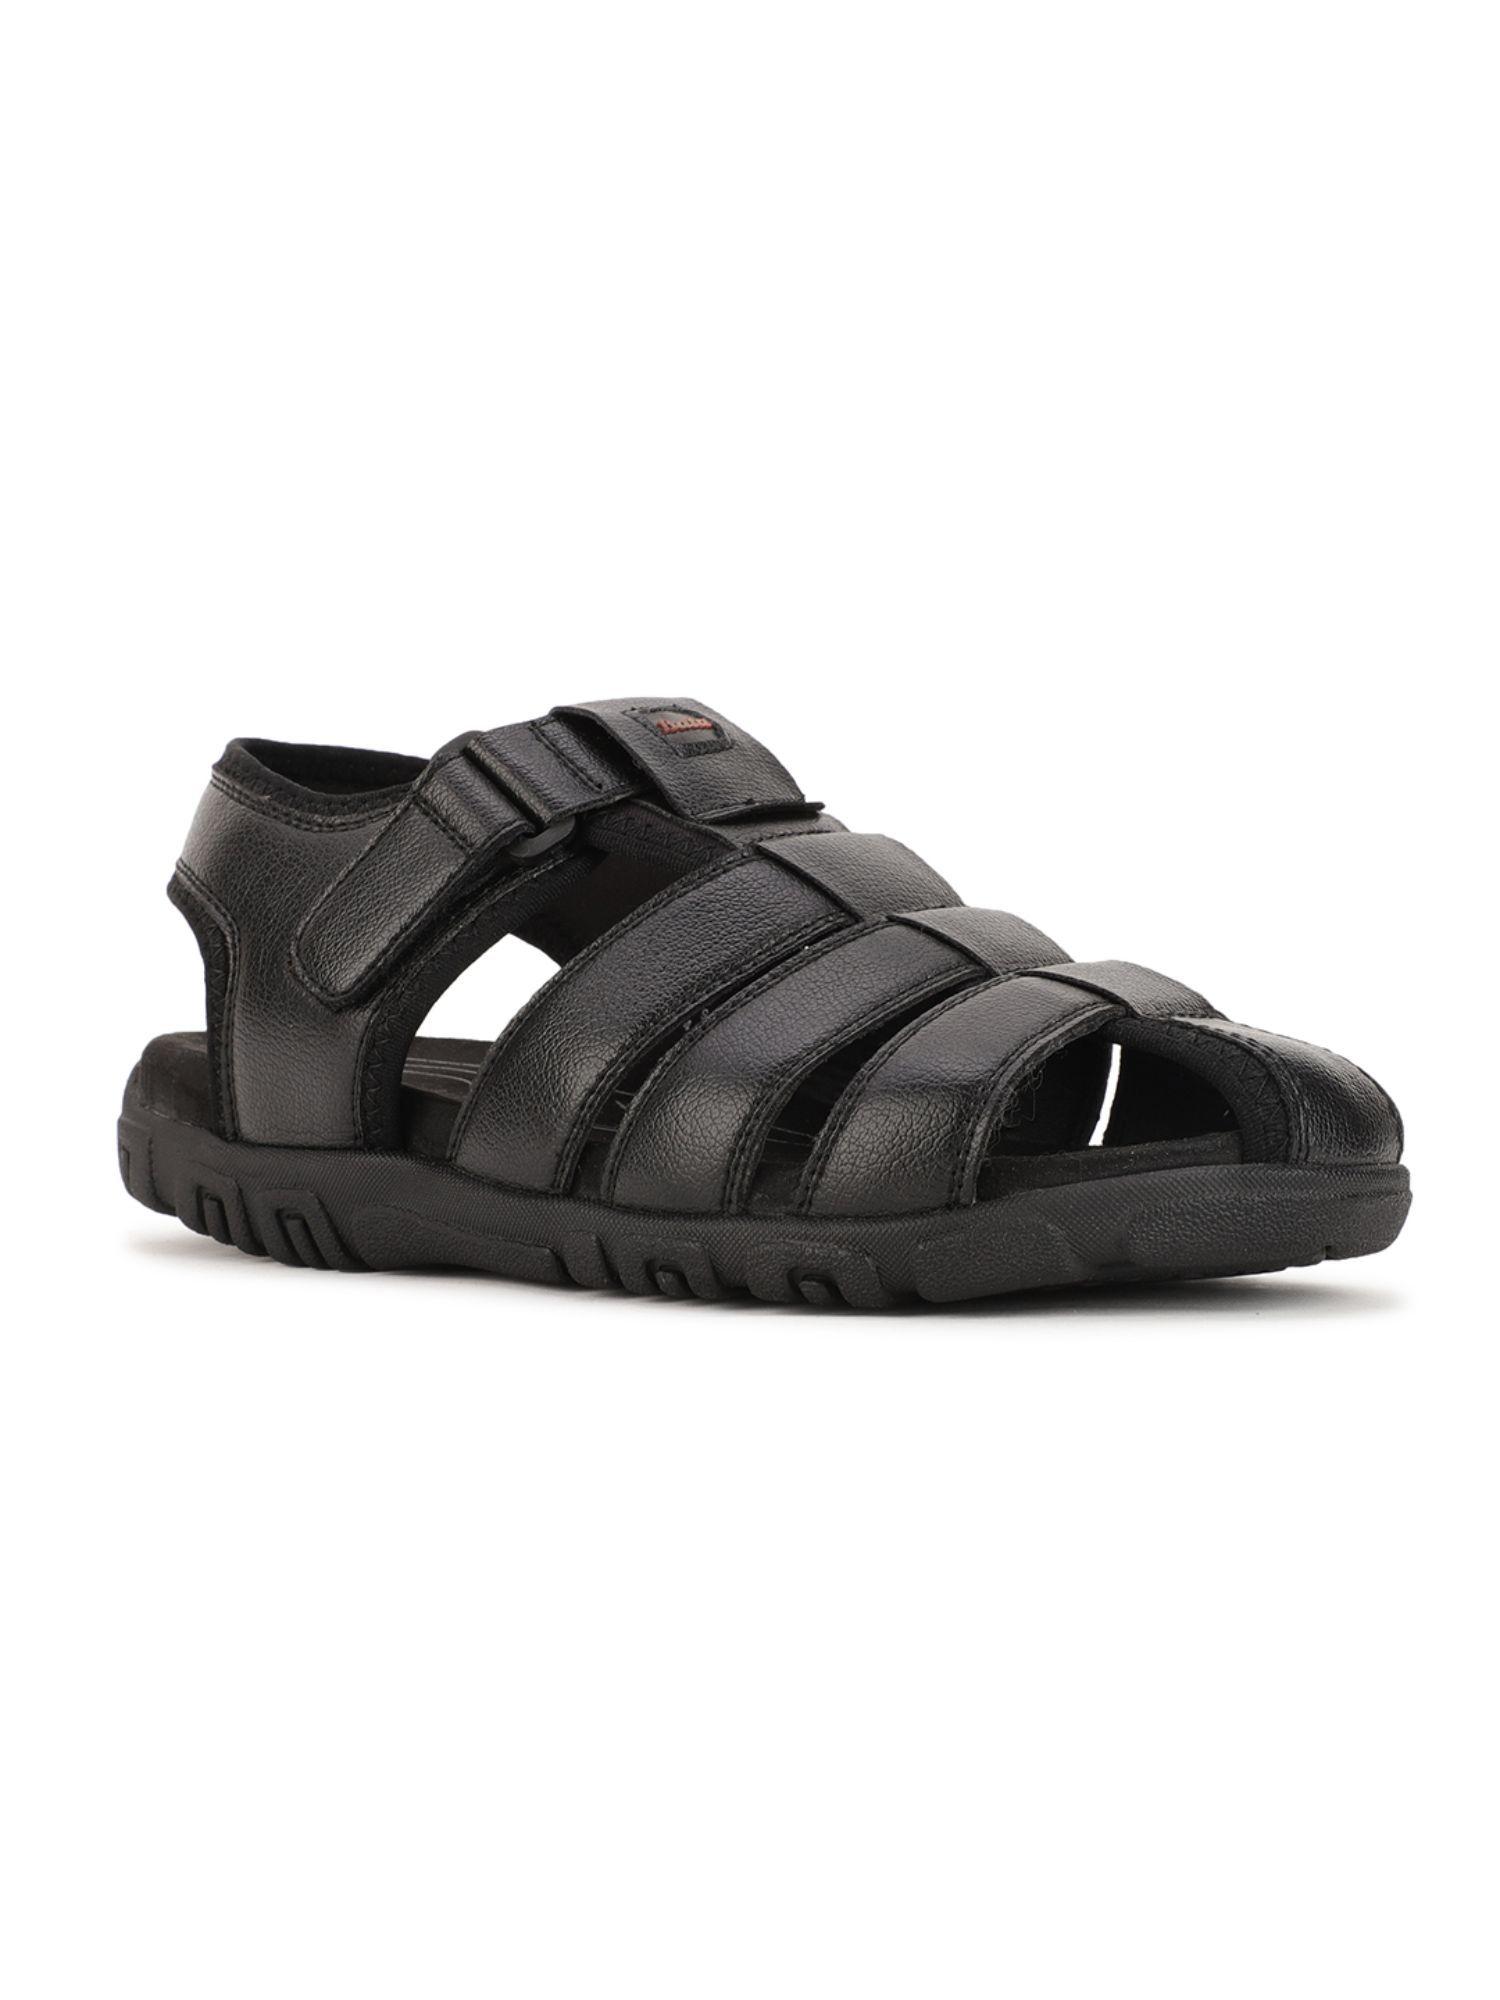 Solid Black Sandals